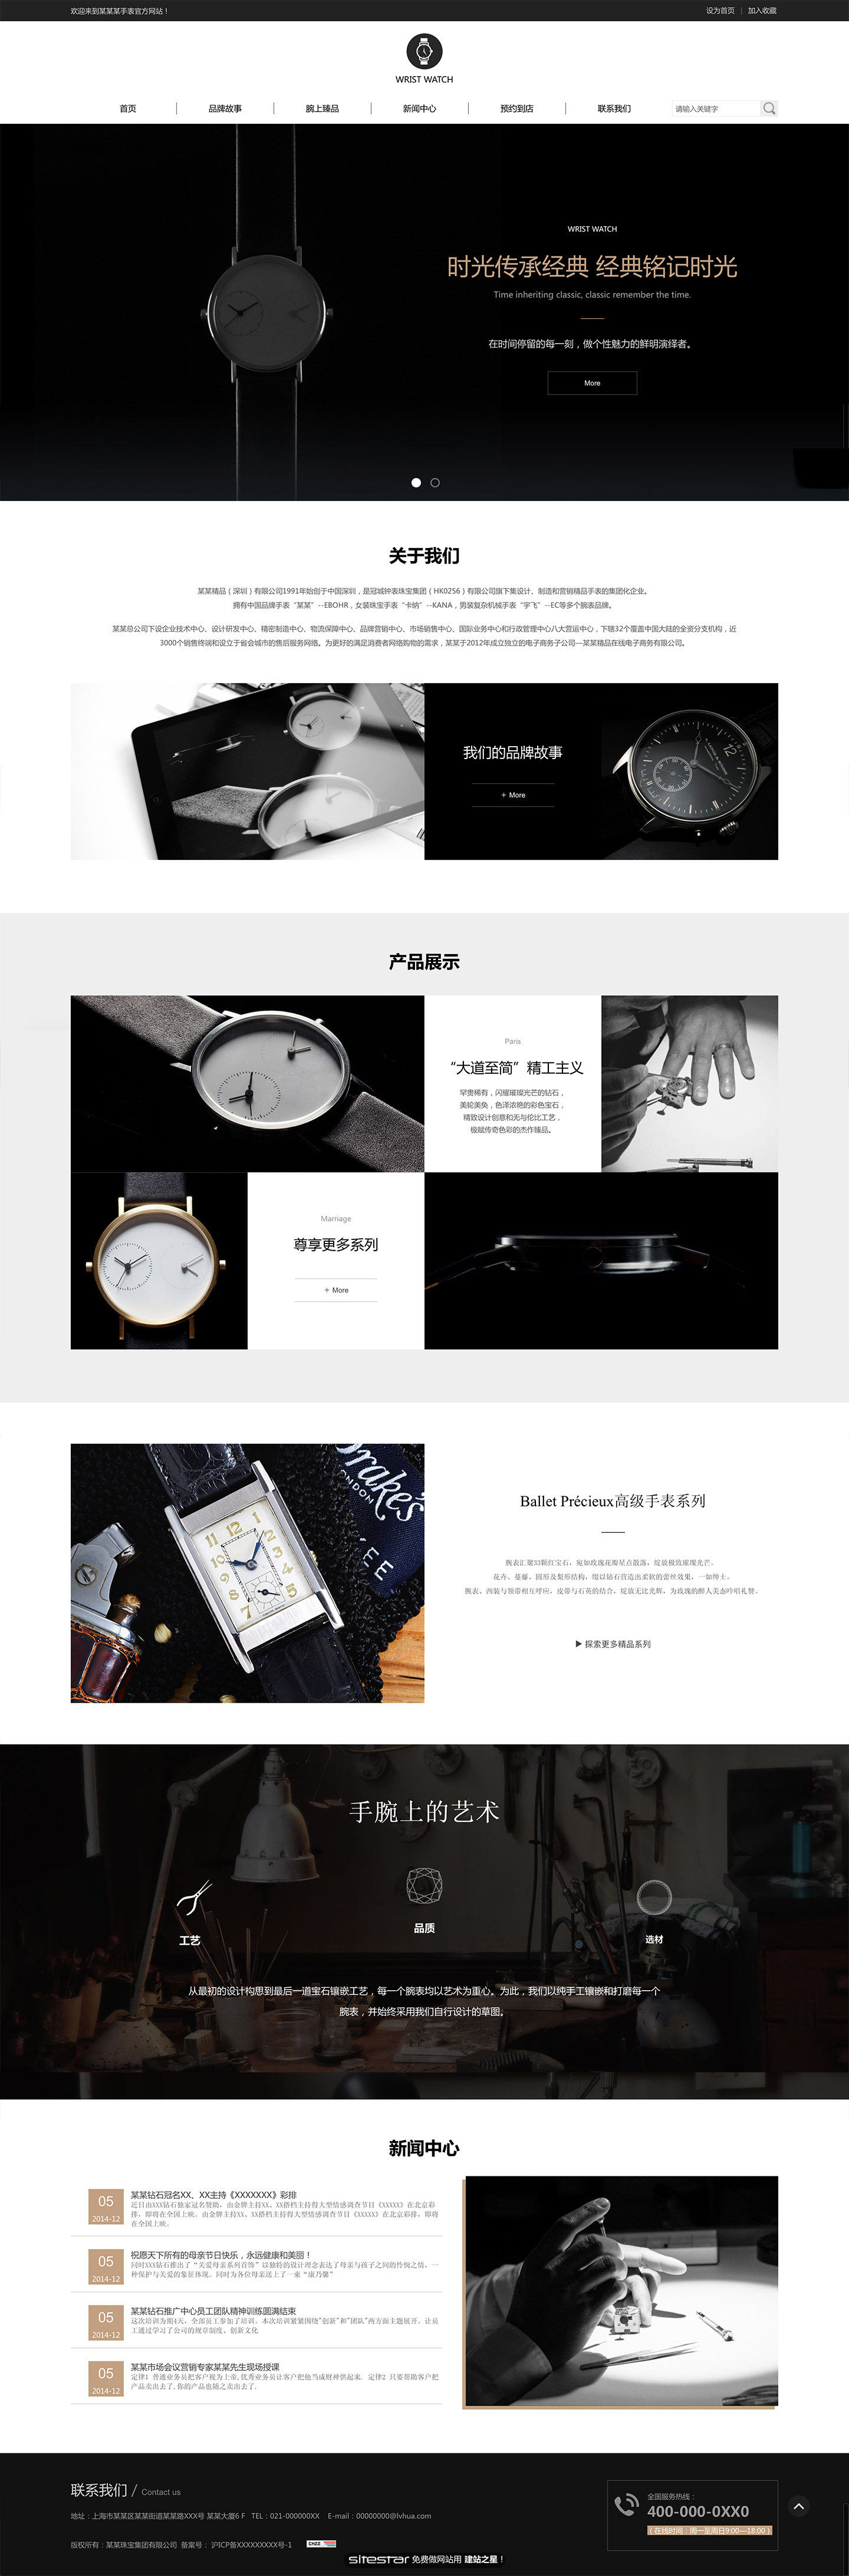 钟表网站模板-watch-500